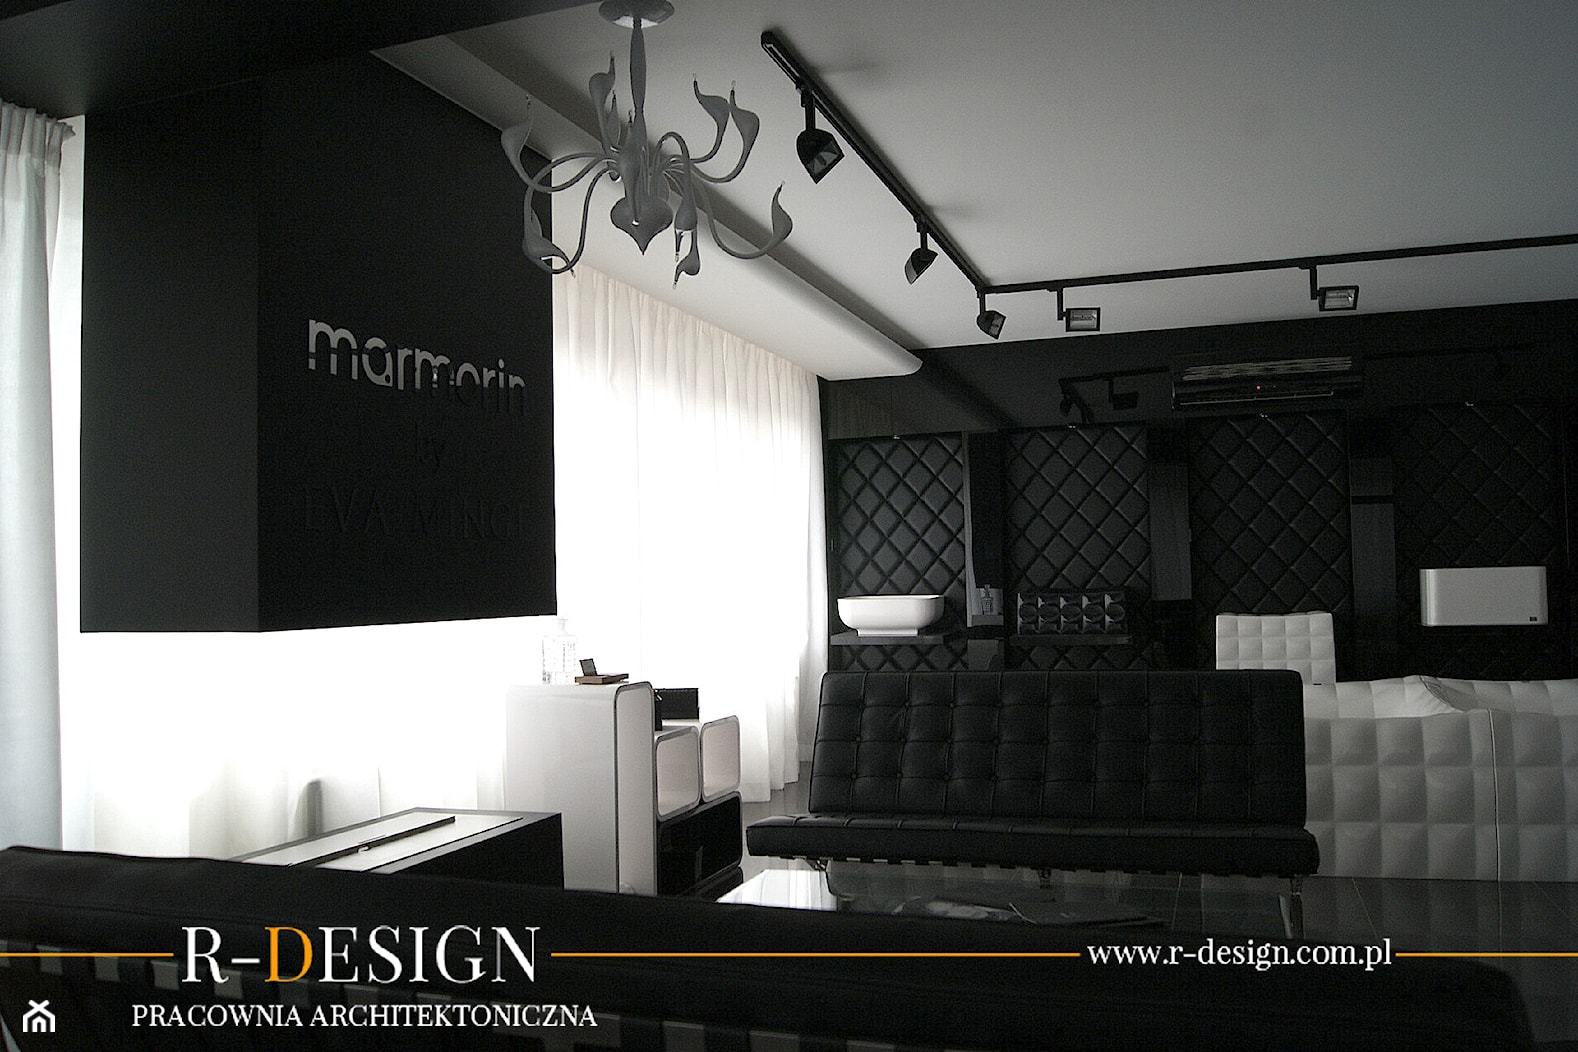 Projekt showroom'u Marmorin by Eva Minge - zdjęcie od R-design Pracownia Architektoniczna - Homebook